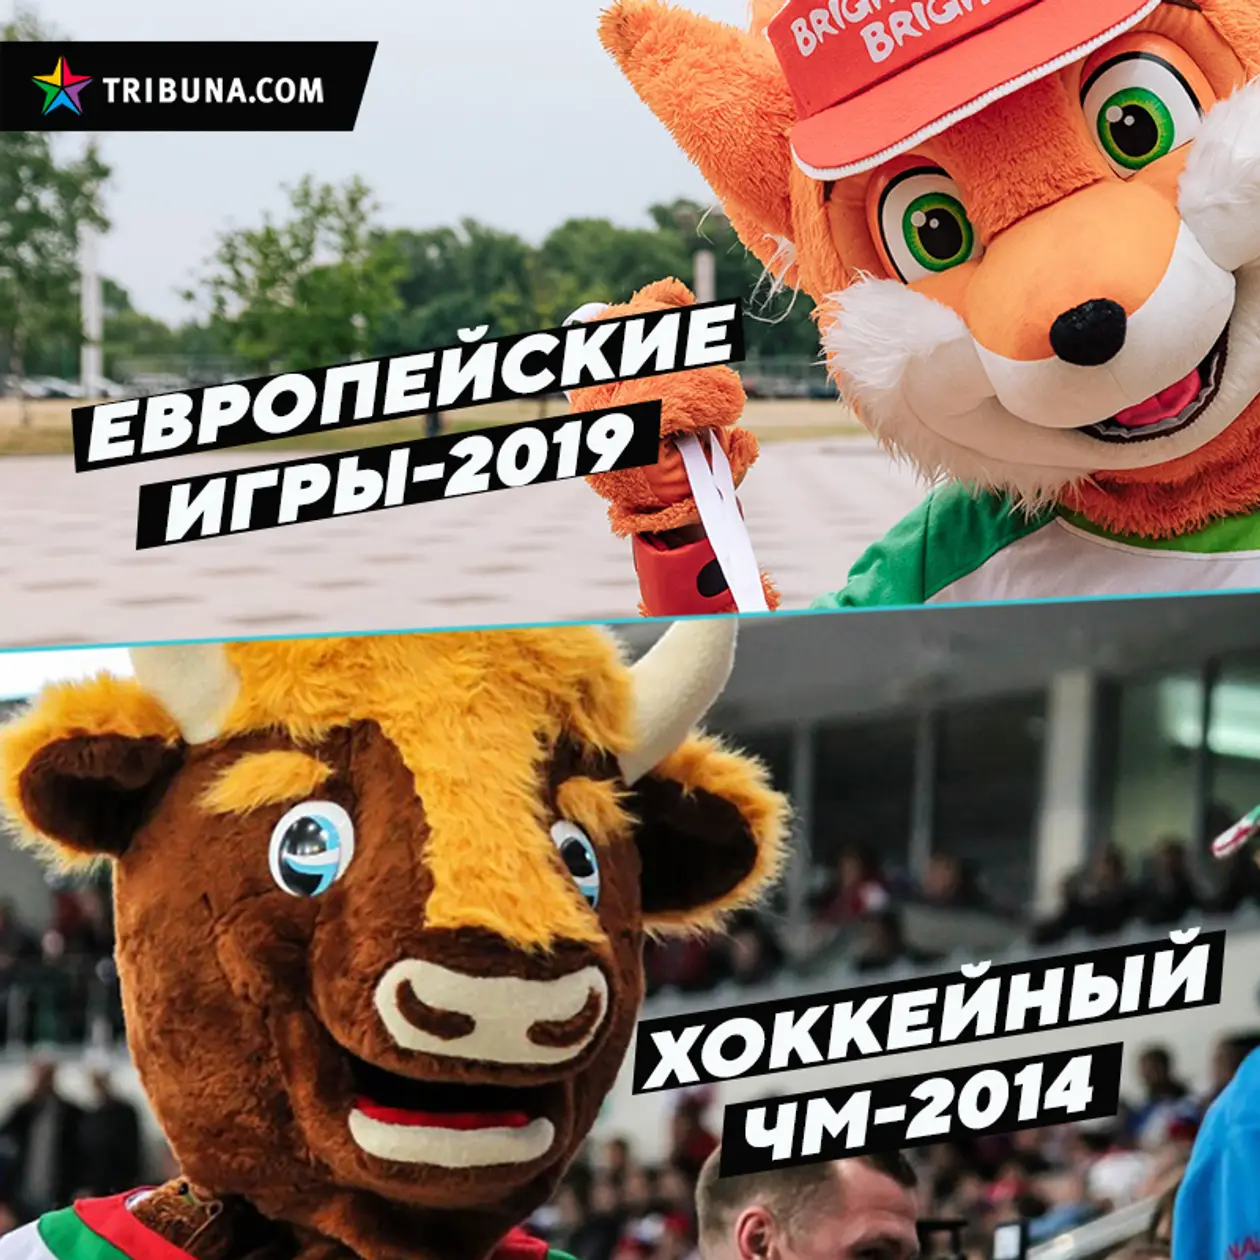 Какой большой турнир в Беларуси вам понравился больше — Европейские игры или хоккейный ЧМ?